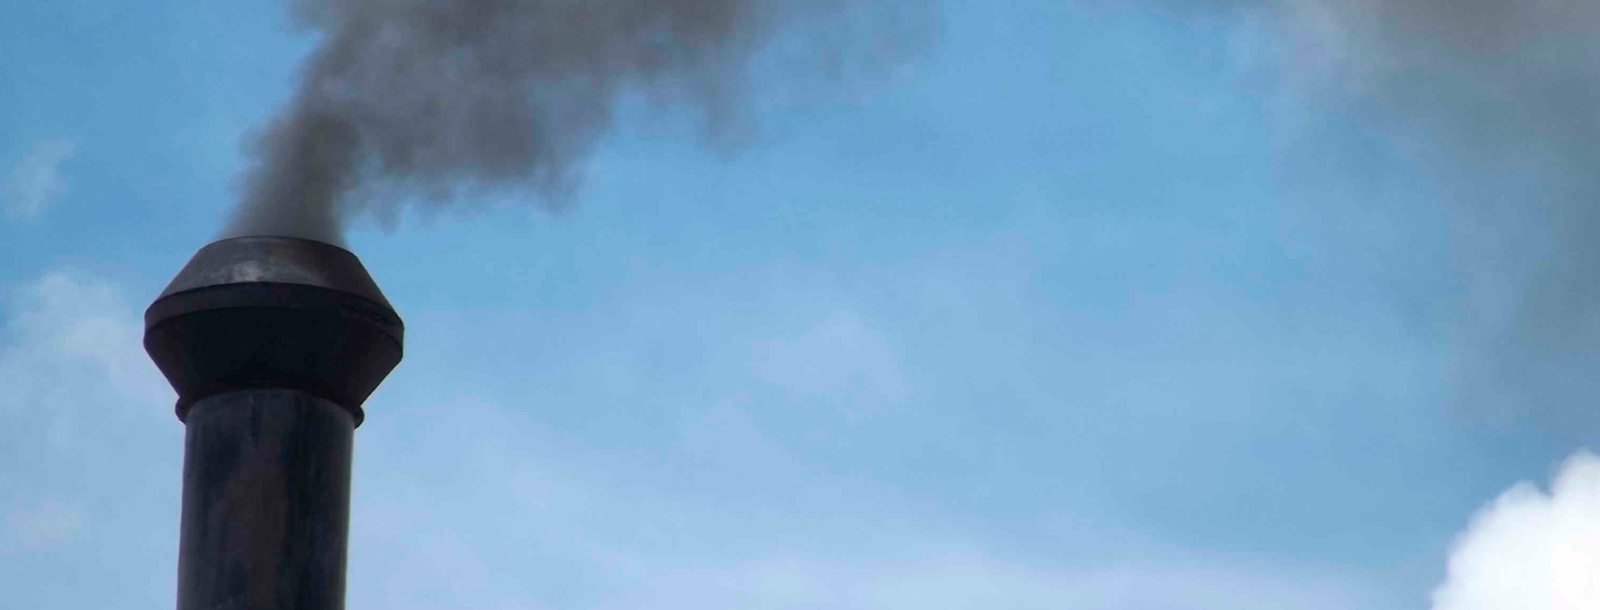 Puro Pellet: En un nuevo aniversario del Plan de Descontaminación atmosférica en el Maule, las alarmas se encienden nuevamente